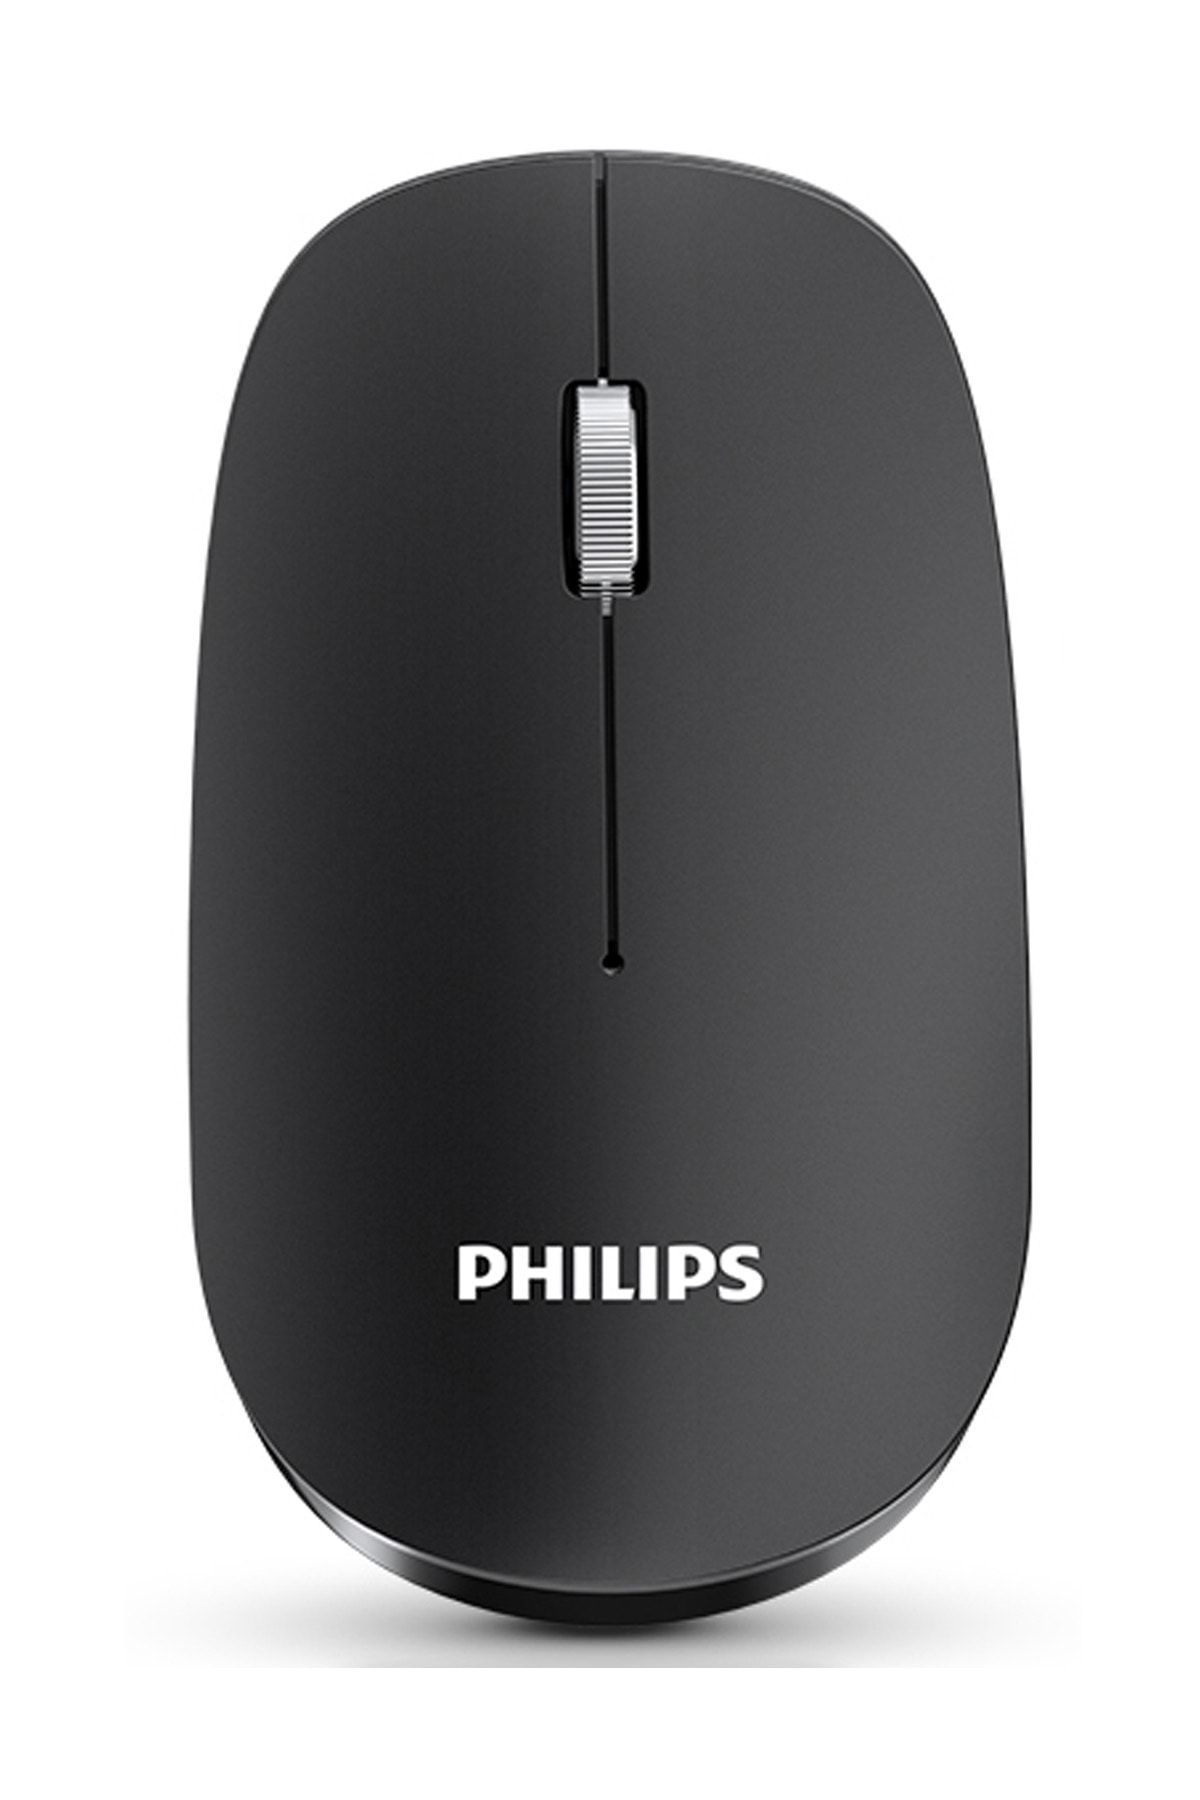 Philips Spk7305 2.4ghz Siyah 800/1000/1200/1600dpi